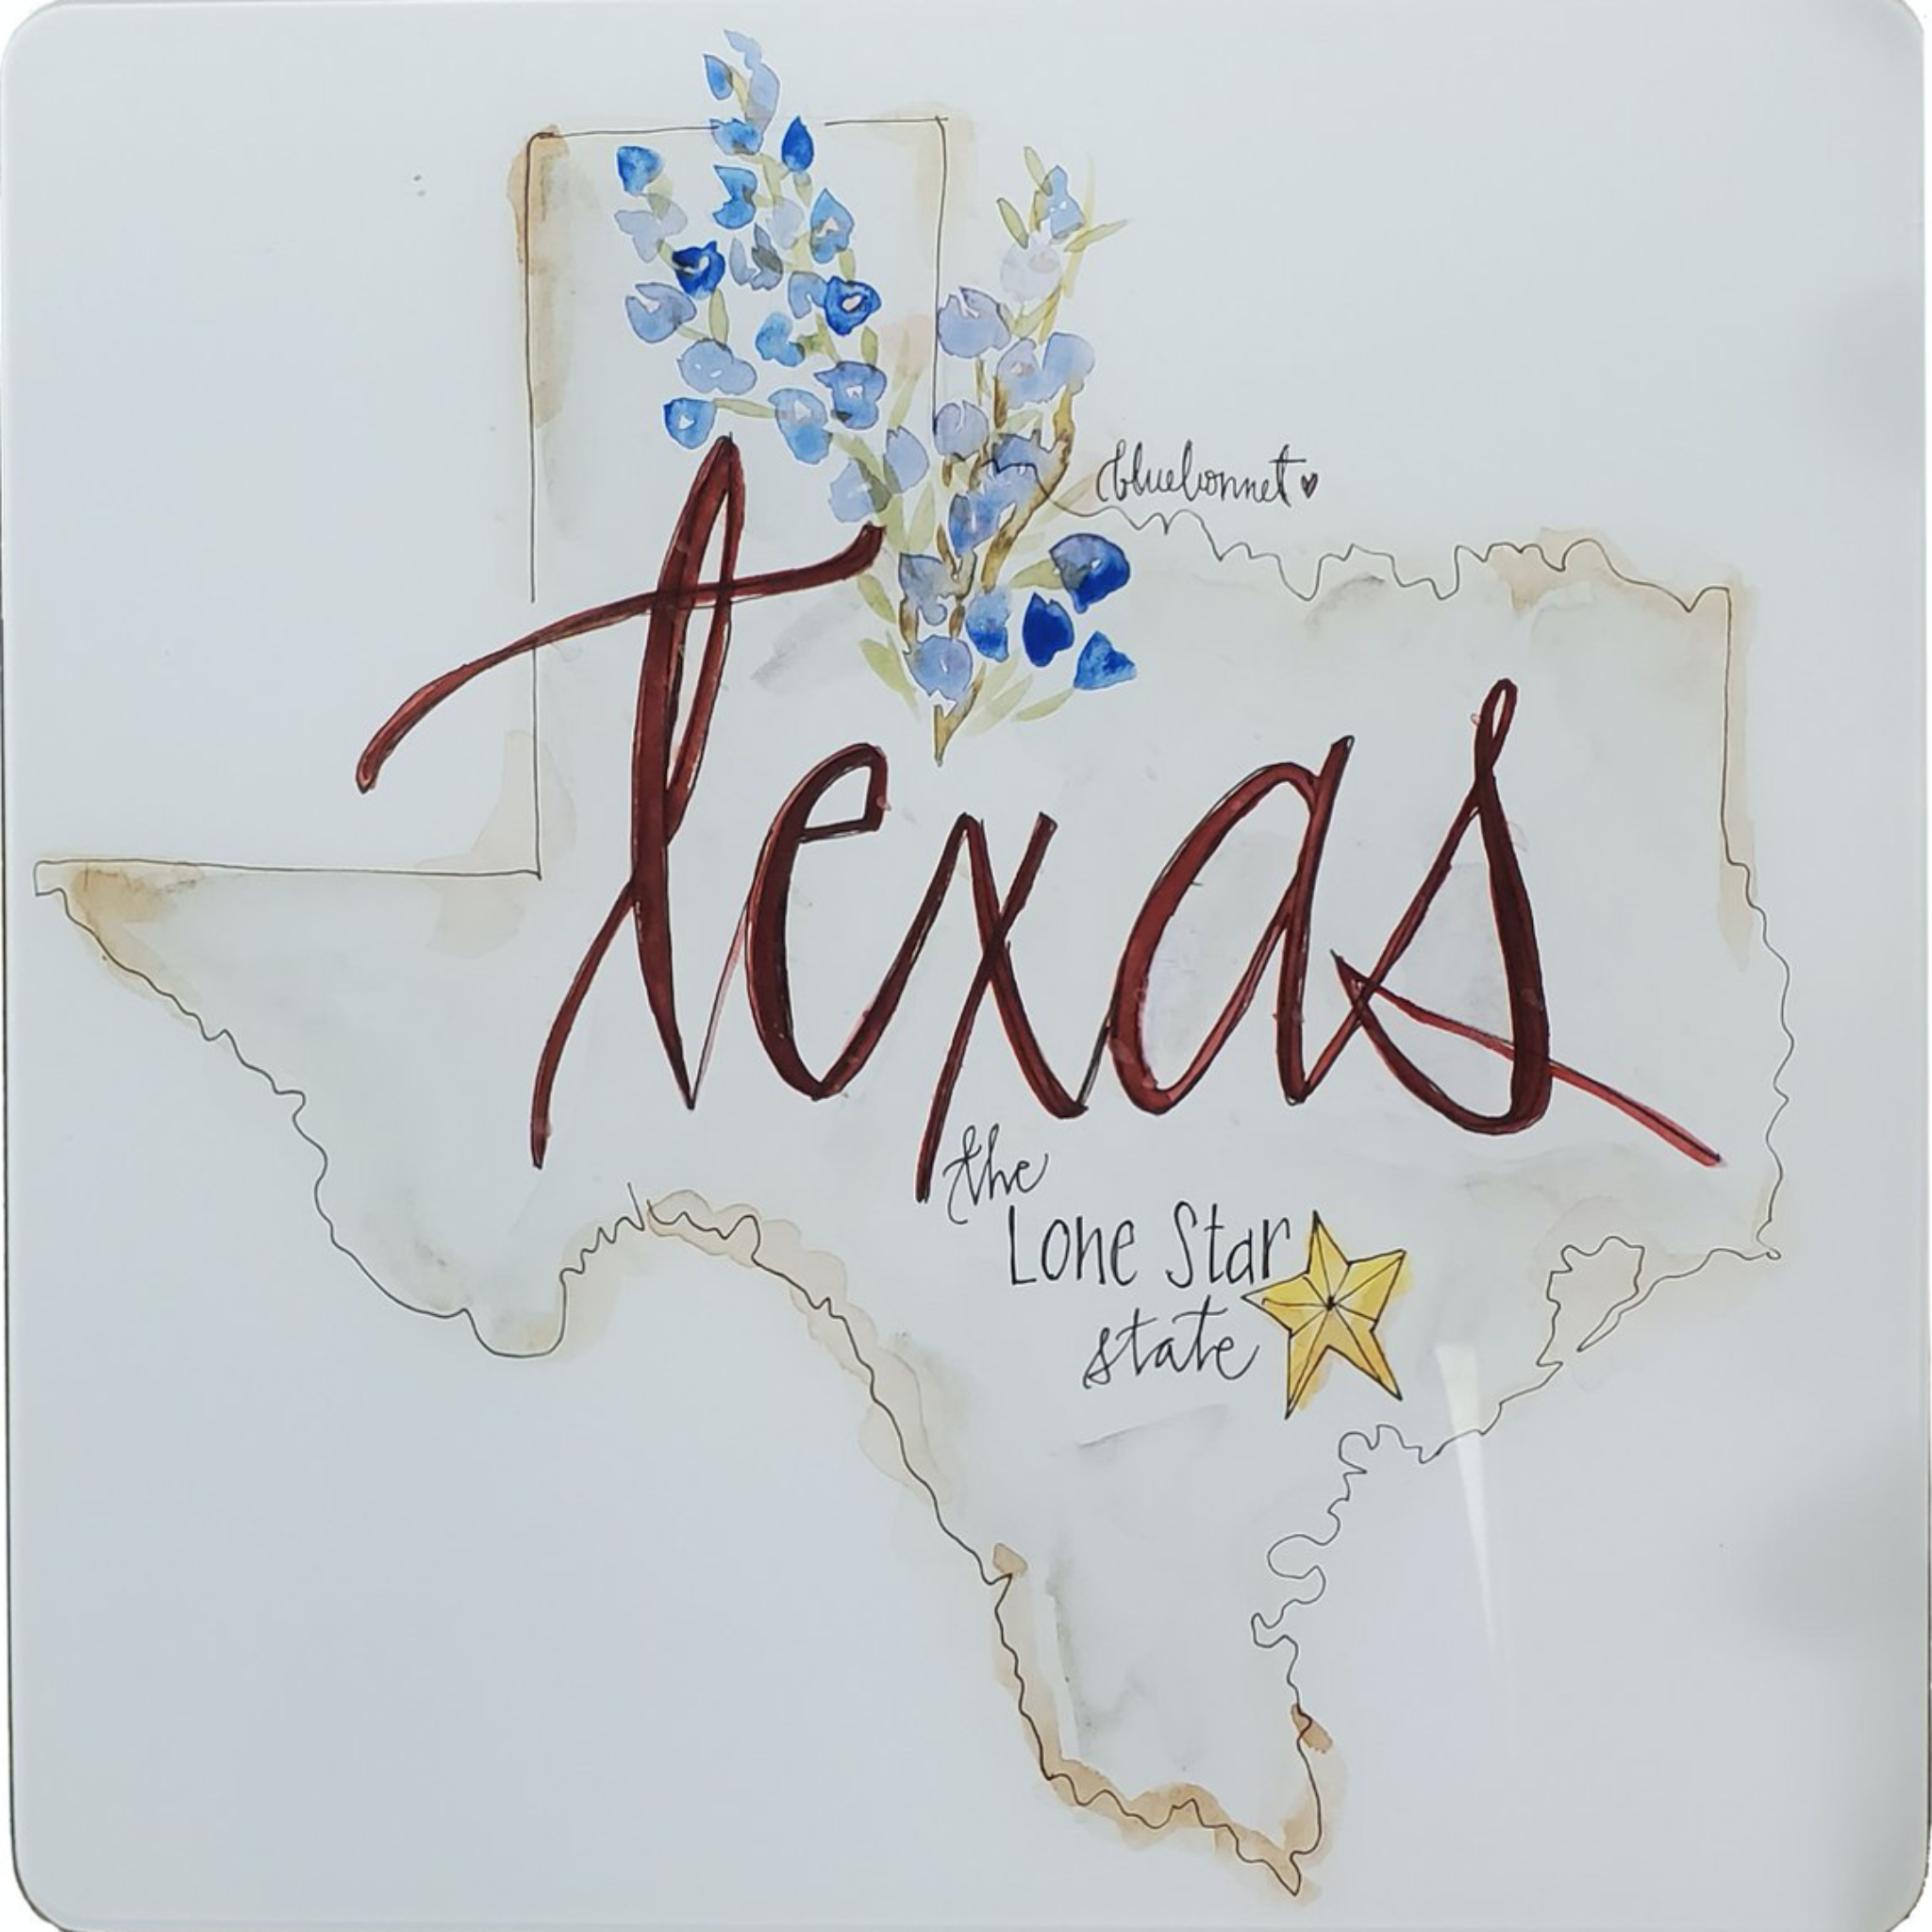 Texas Theme Kitchen Gifts